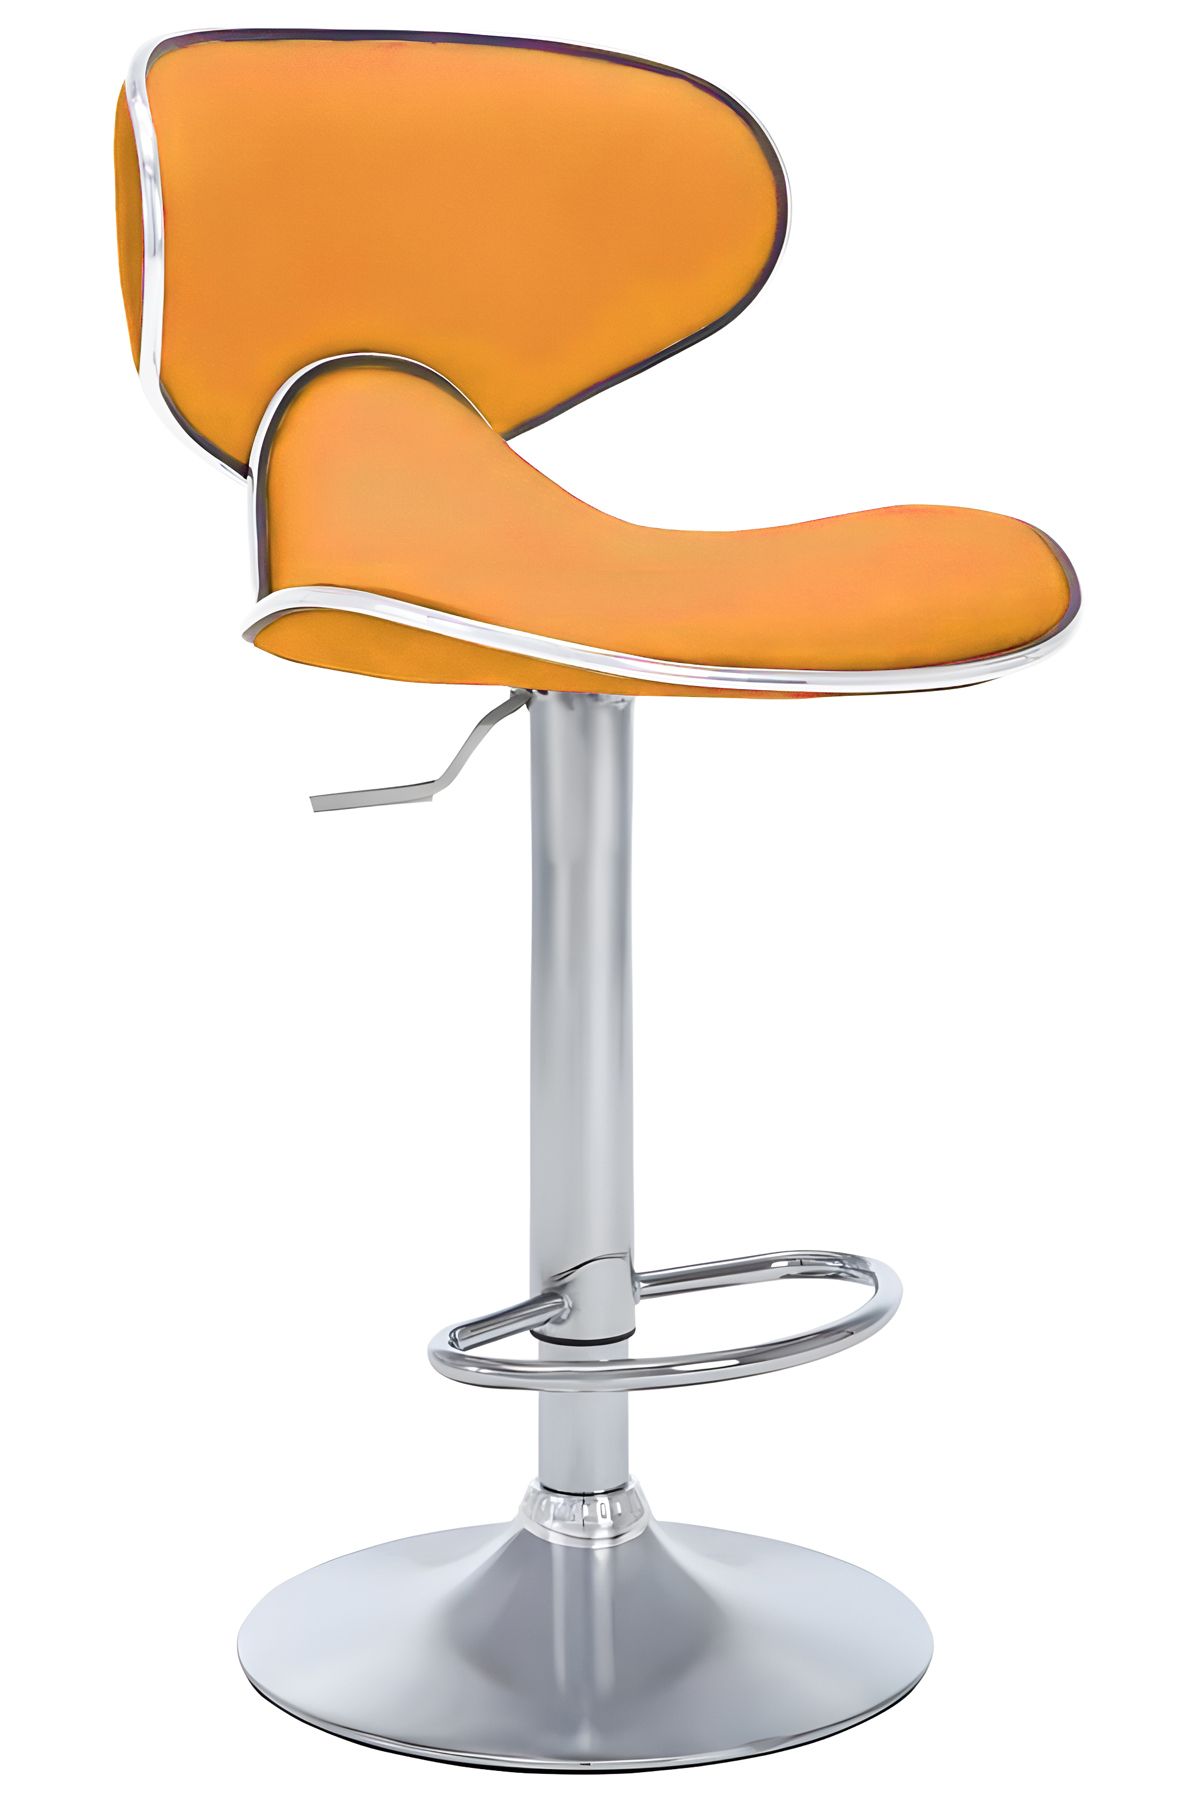 Bürocci Zen Bar Taburesi - Turuncu Modern Deri Metal Ayaklı Yüksek Tezgah Sandalyesi - 9549s0516